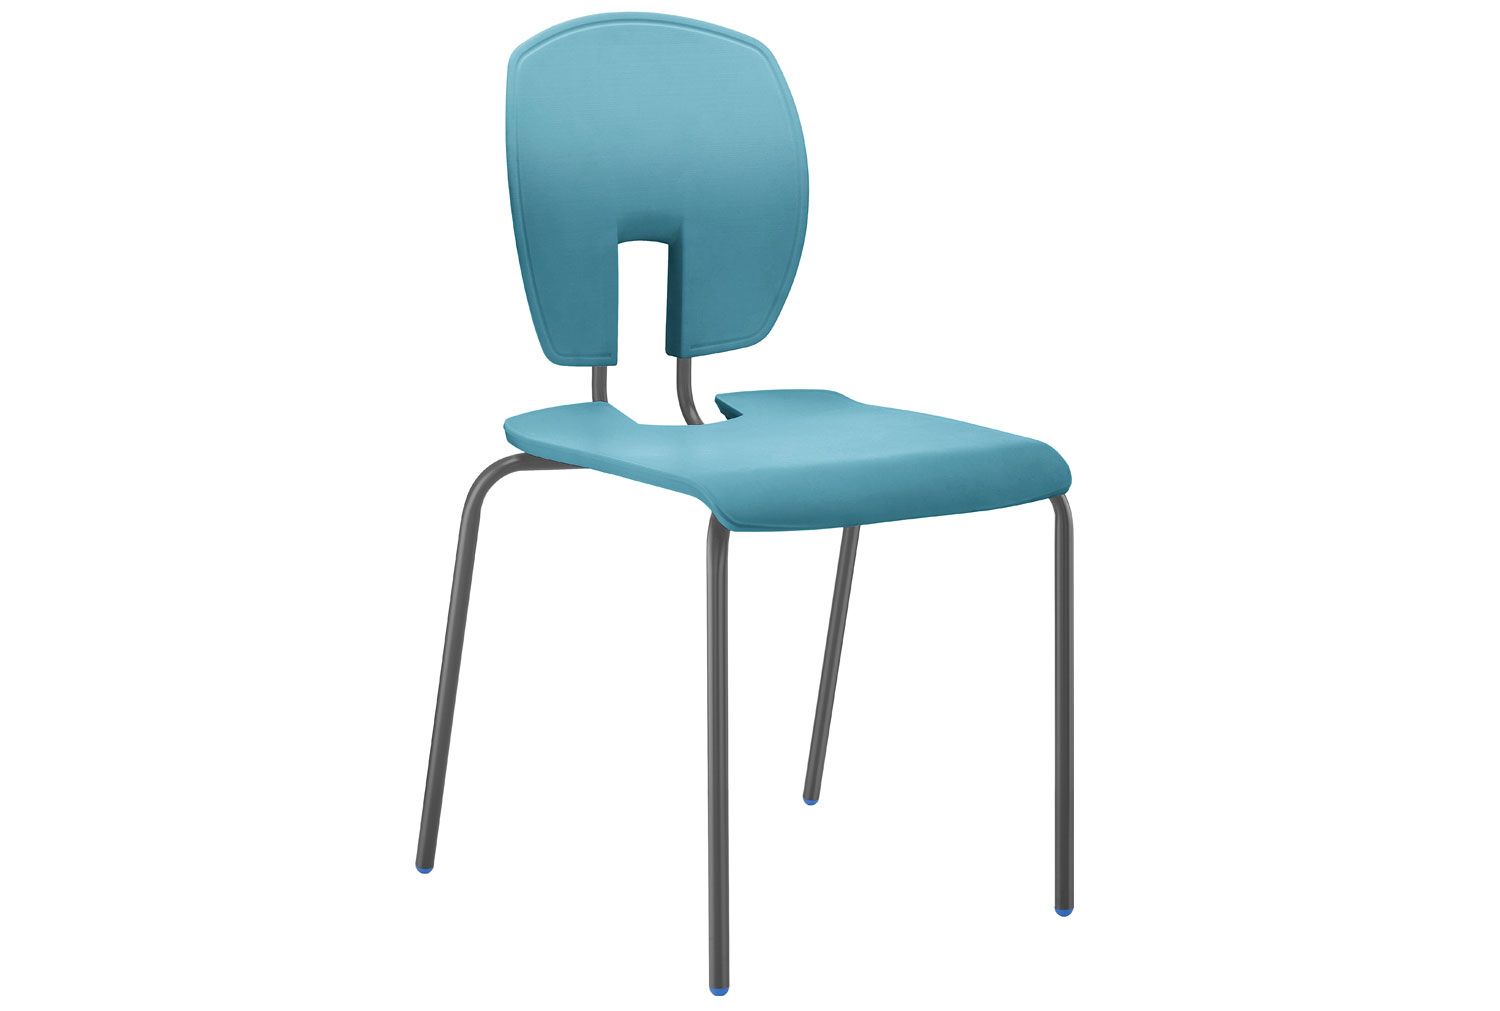 Hille SE Curve Classroom Chair